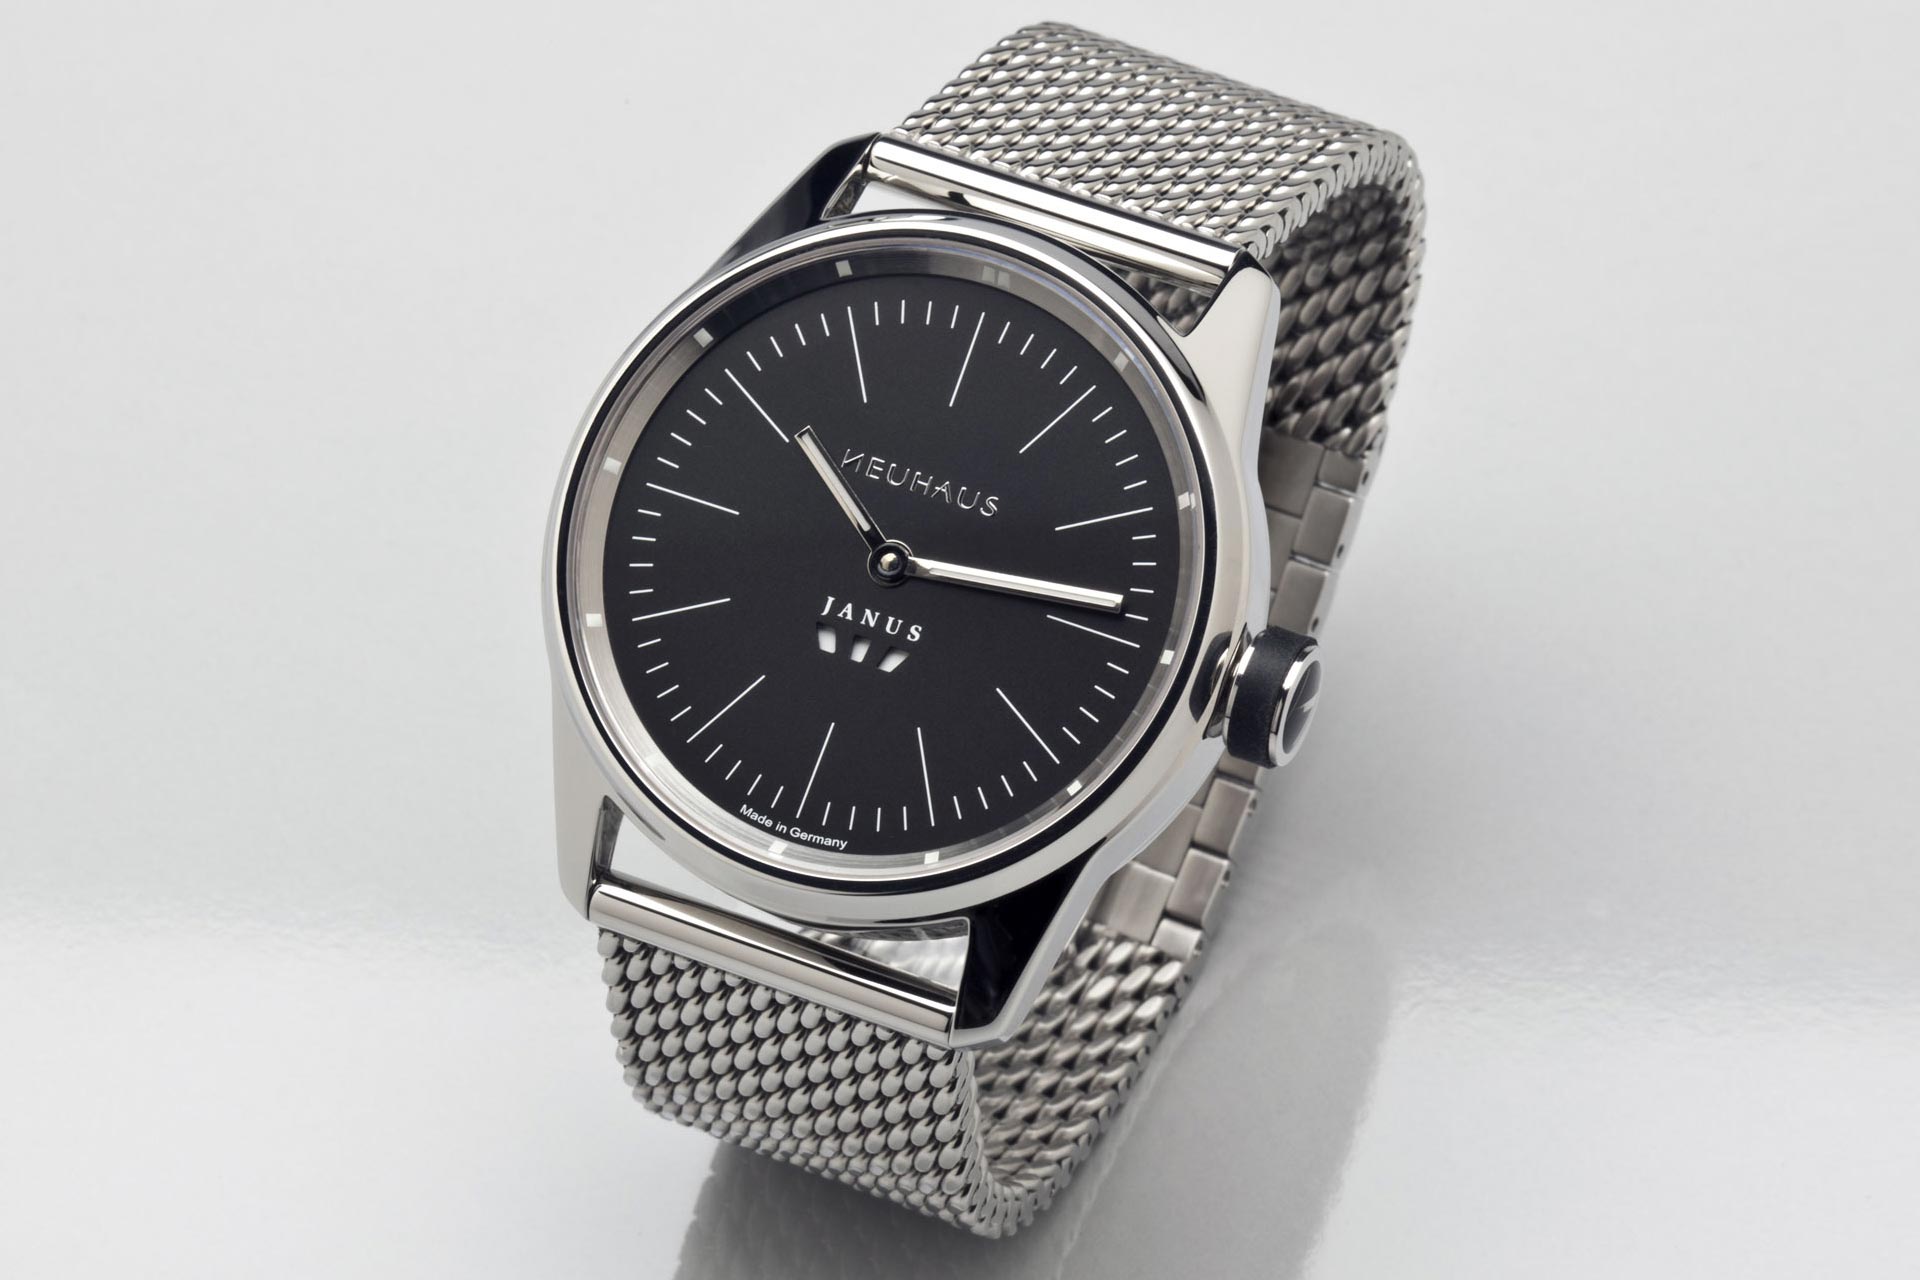 Zweizeigeruhr von NEUHAUS Timepieces, Modell JANUS minimal mobil schraeg